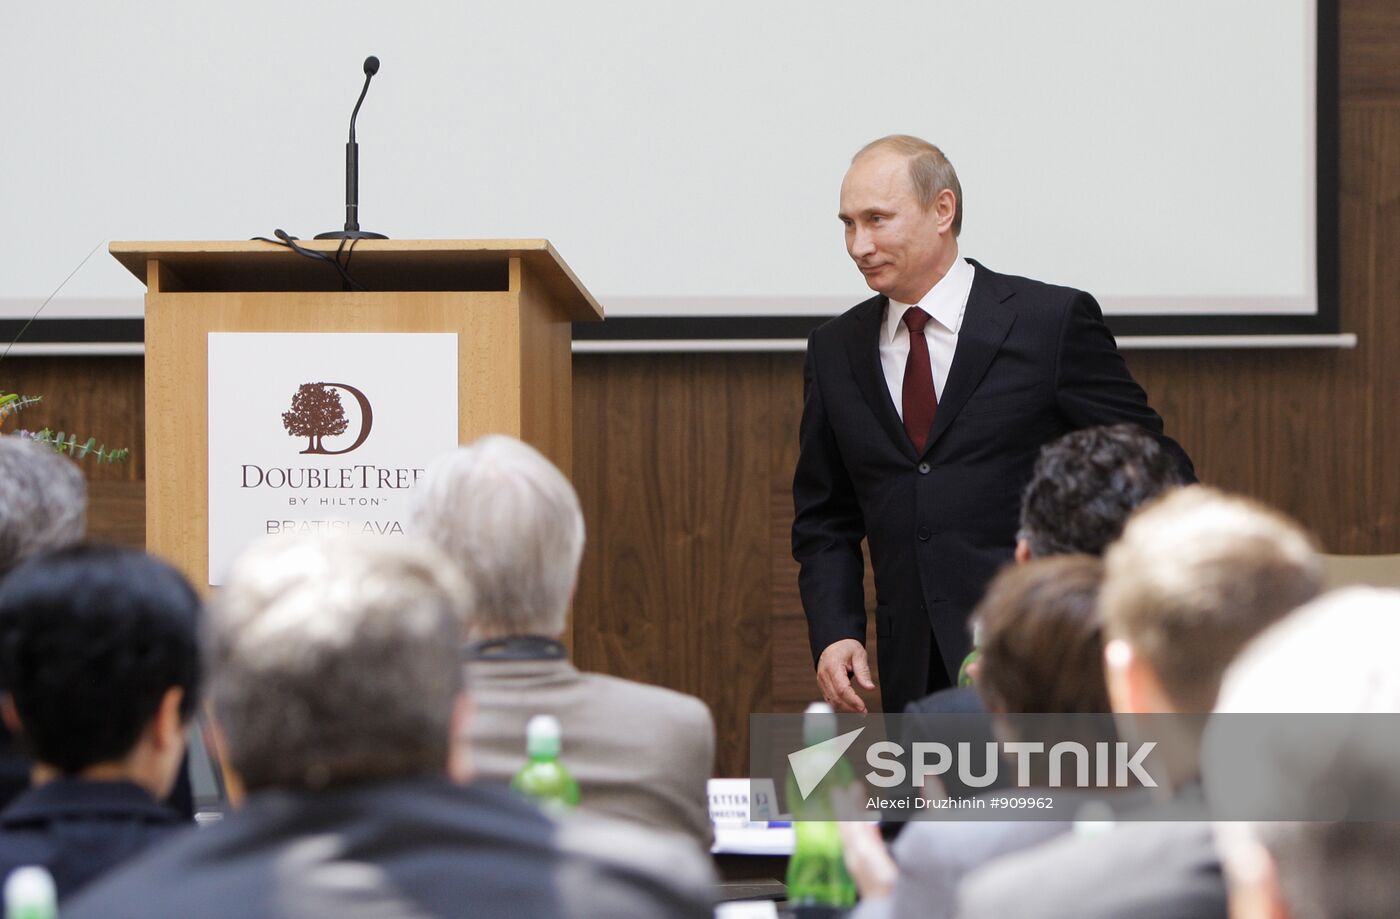 Vladimir Putin's trip to Slovakia